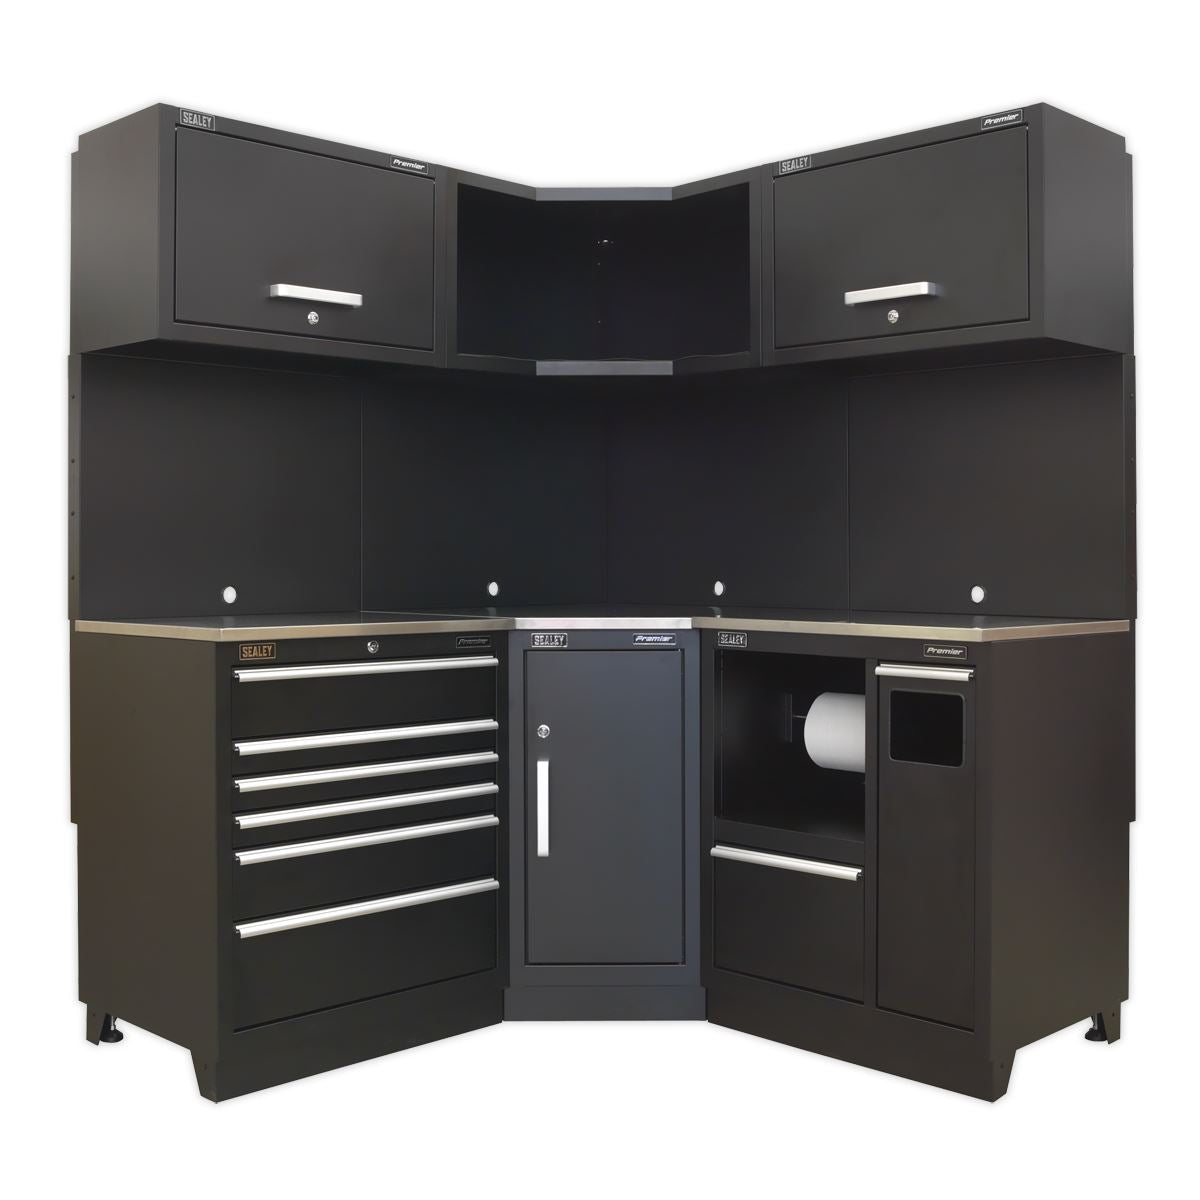 Sealey Premier Premier 1.7m Corner Storage System - Stainless Worktop